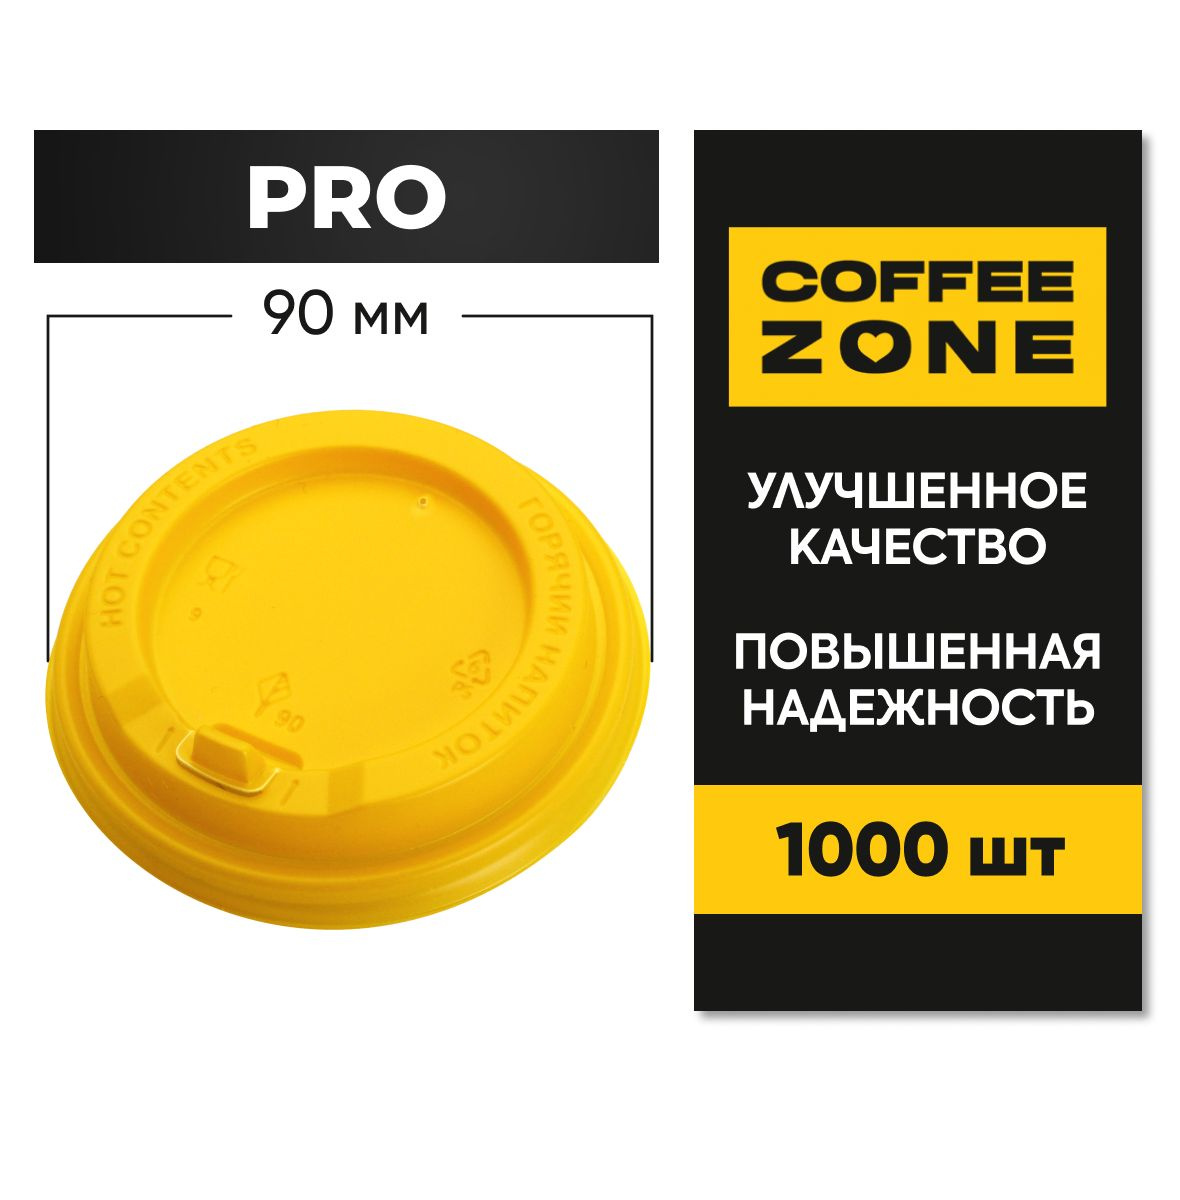  Крышки 90 мм / 1000 штук PRO Желтые одноразовые c клапаном (откидным питейником) пищевые пластиковые повышенной прочности от COFFEE ZONE для стаканов 300 мл - 400 мл